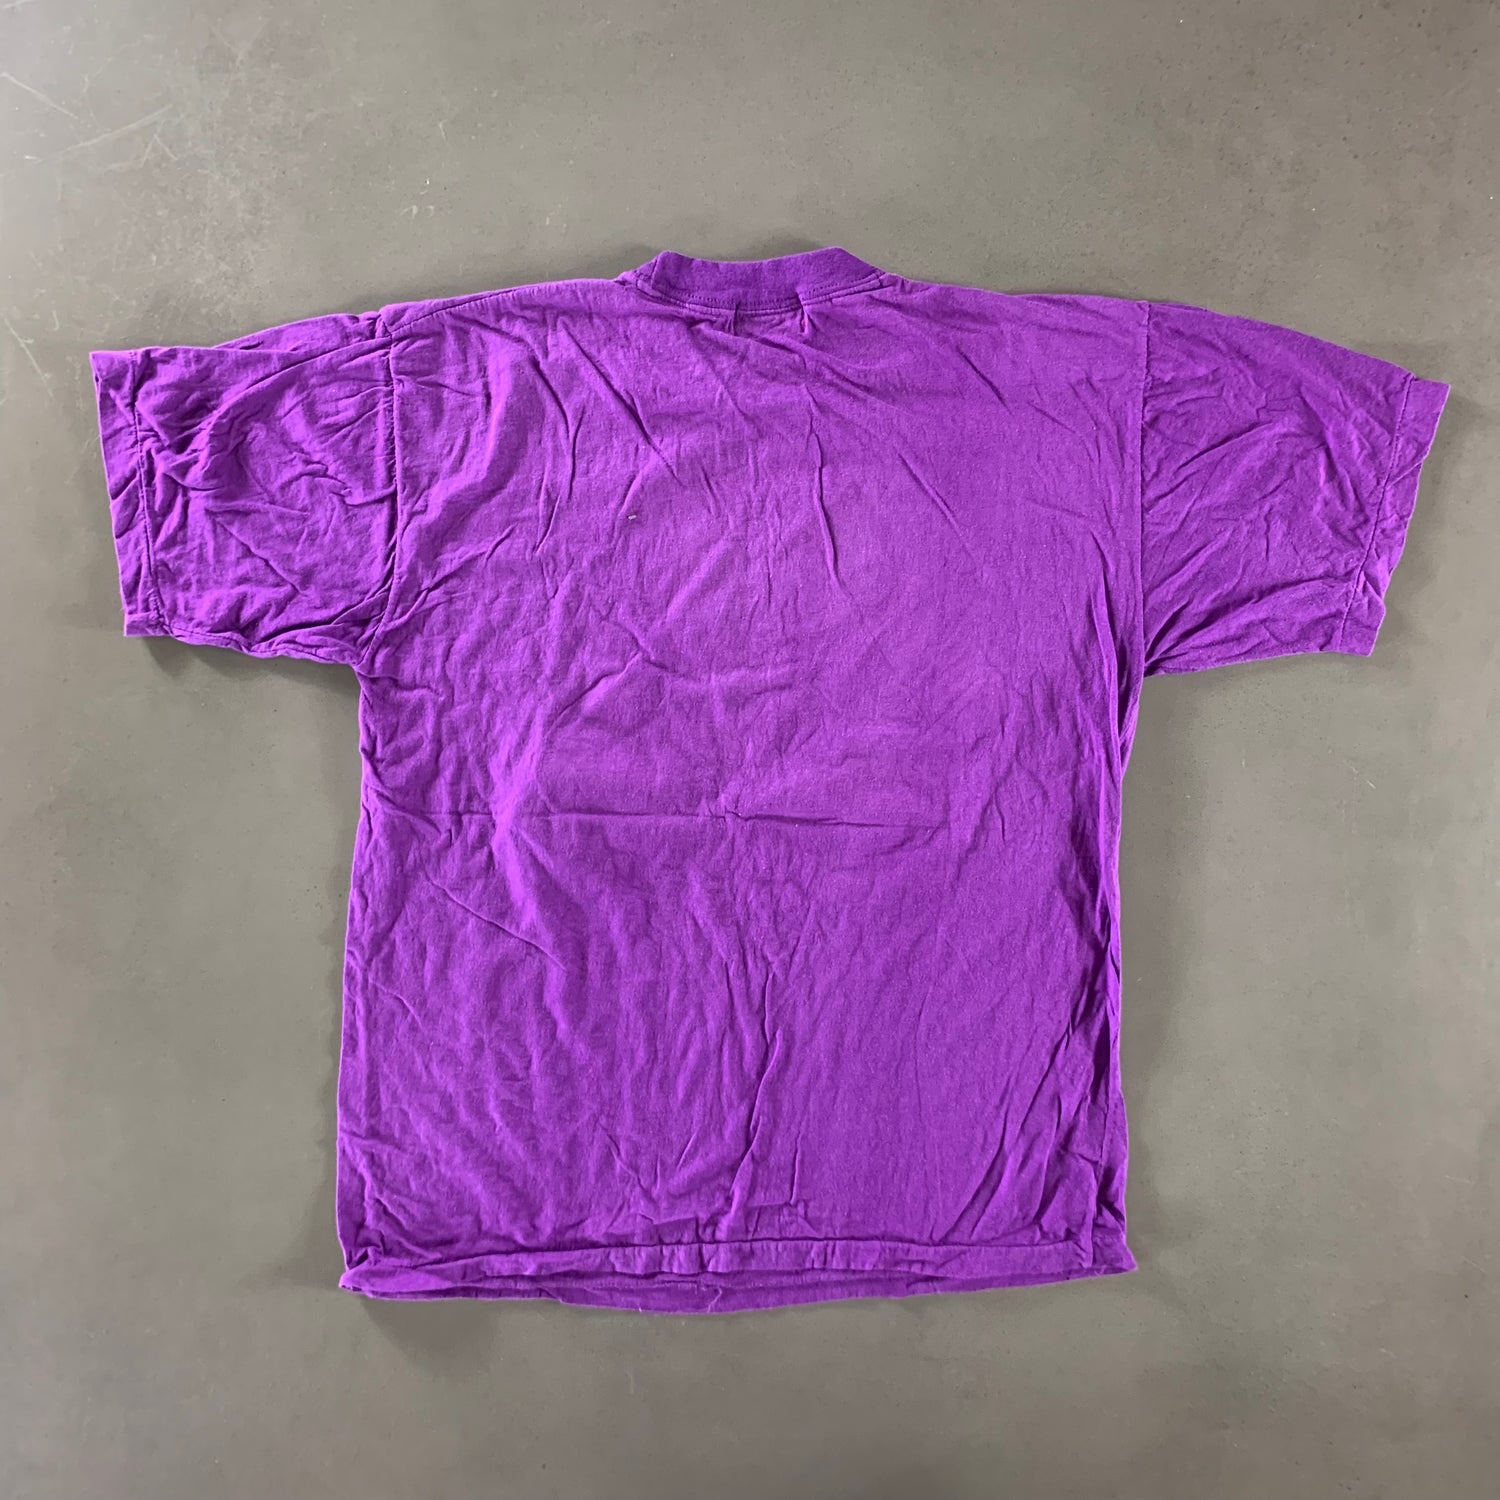 Vintage 1990s Bahamas T-shirt size XL